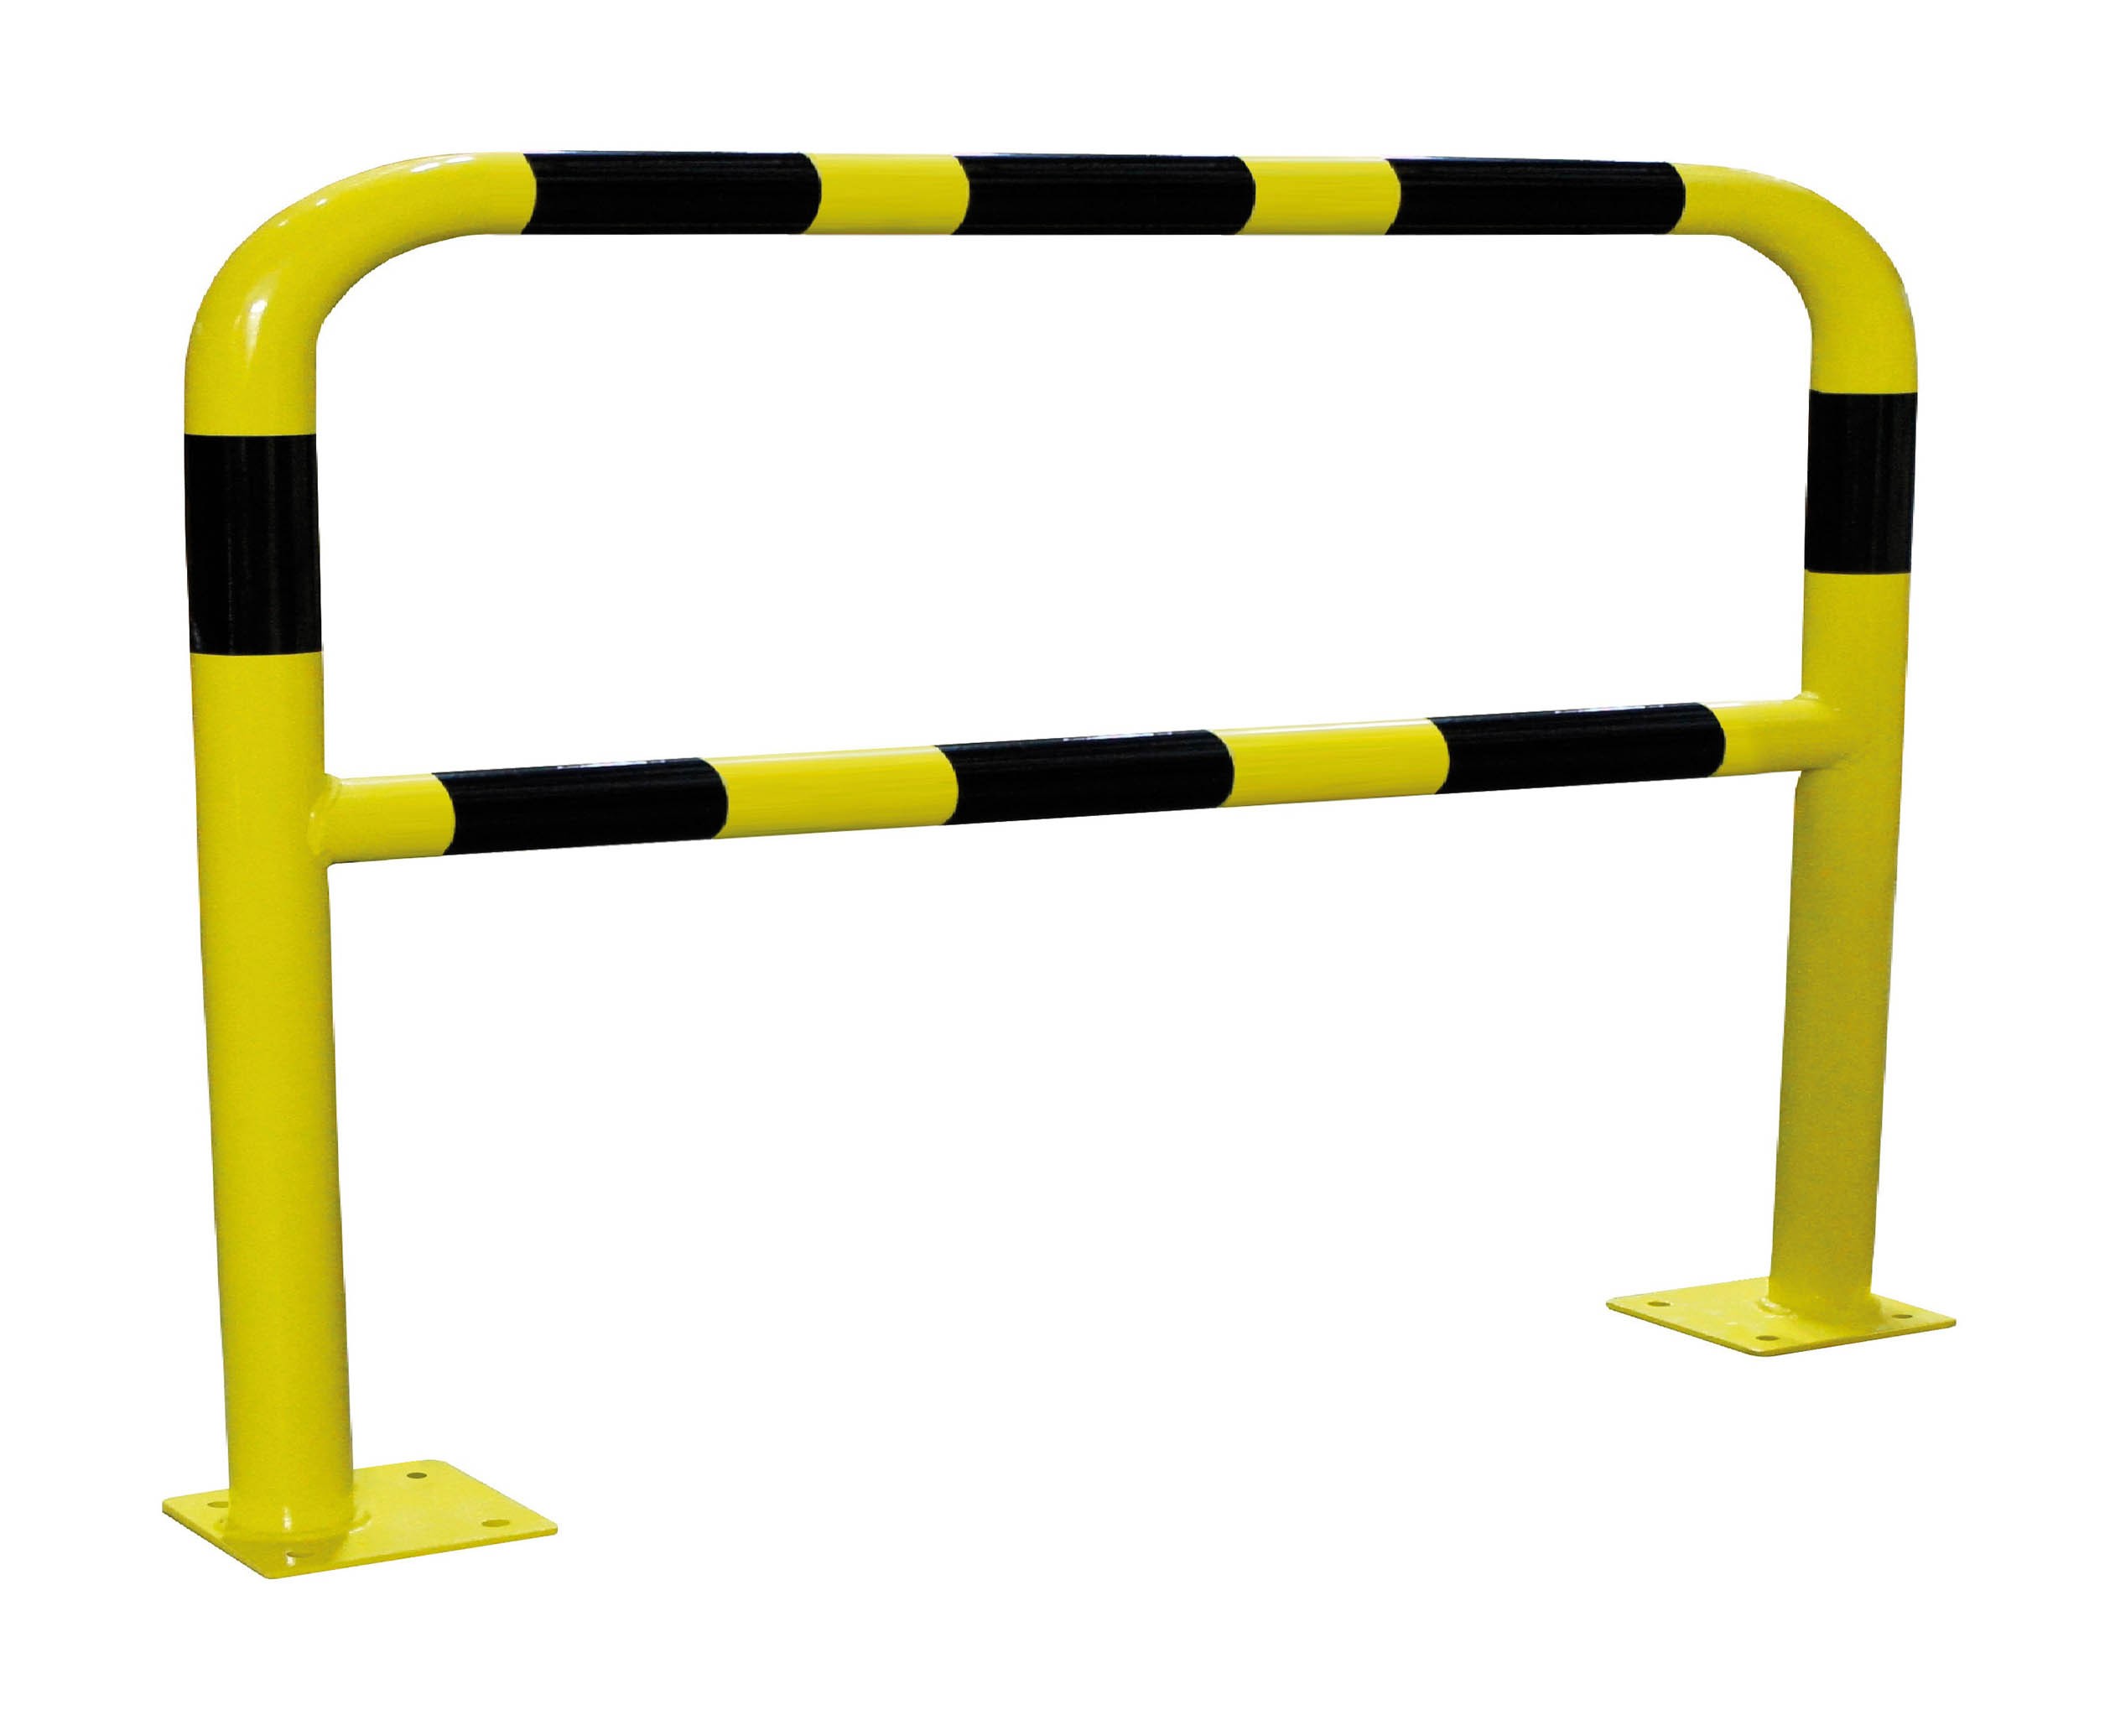 Barrière de sécurité acier jaune et noir 2000 x 1000